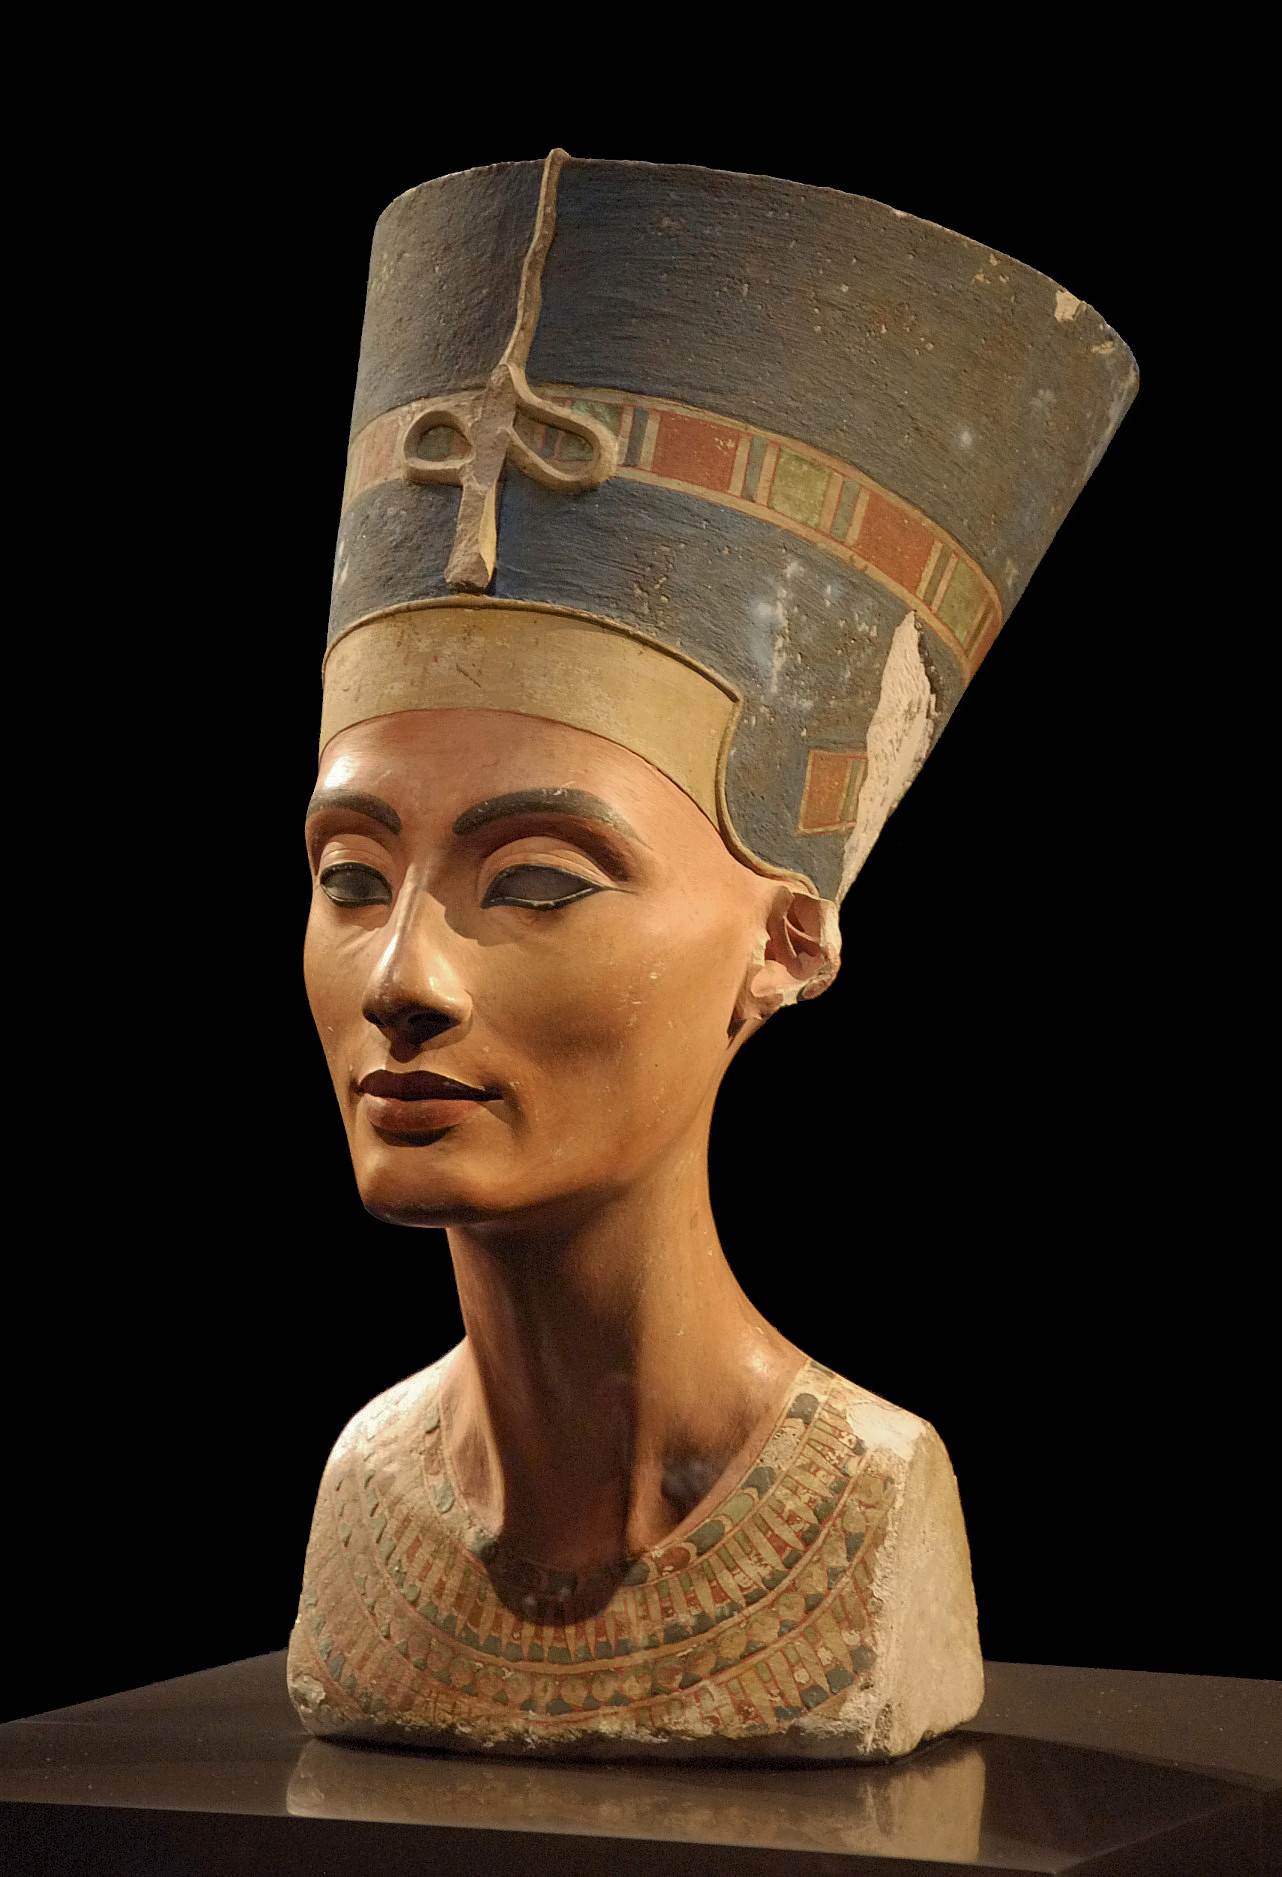 Obrázok busty Nefertiti, ktorá bola objavená v hlavnom meste Achnatonu Amarna 6. decembra 1912. Busta sa nachádza v múzeu Neues Museum v Berlíne.